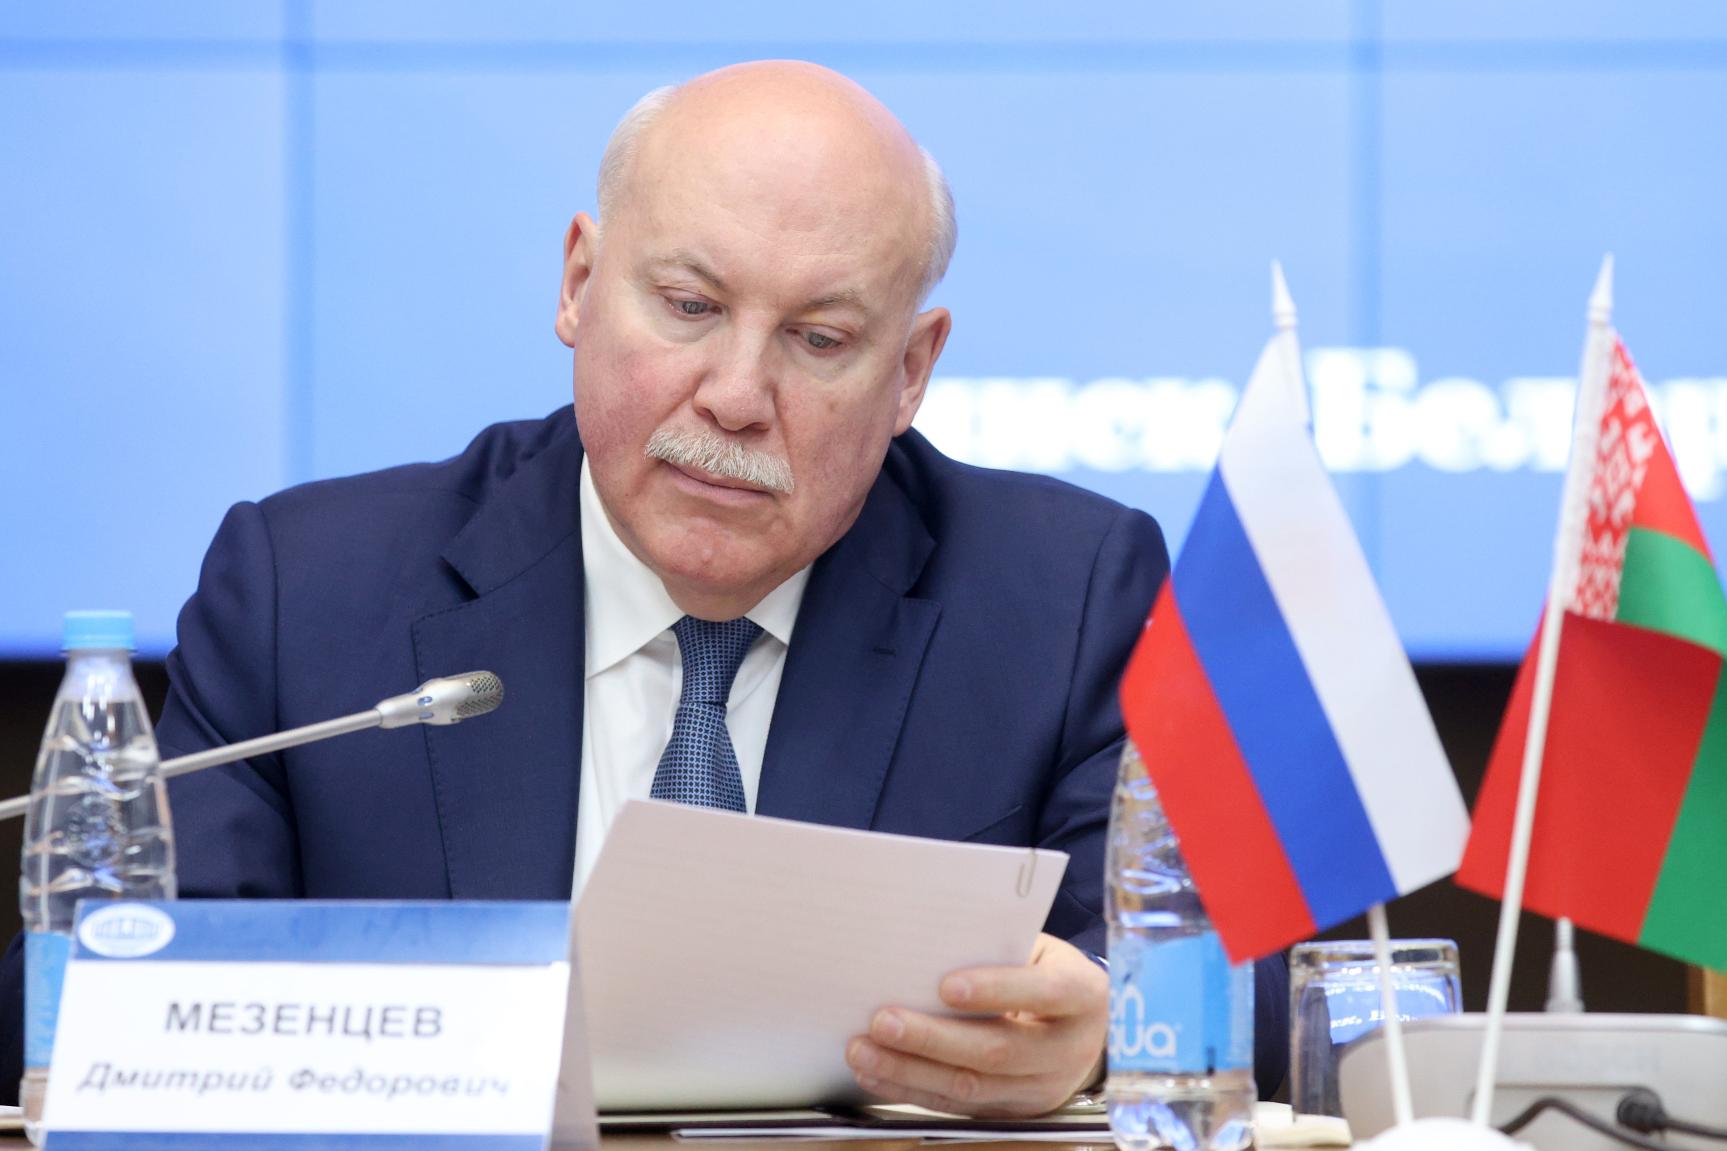 Дмитрий Мезенцев: отношения России и Беларуси имеют свой особый важнейший ресурс – это доверие, взаимопонимание и открытый диалог